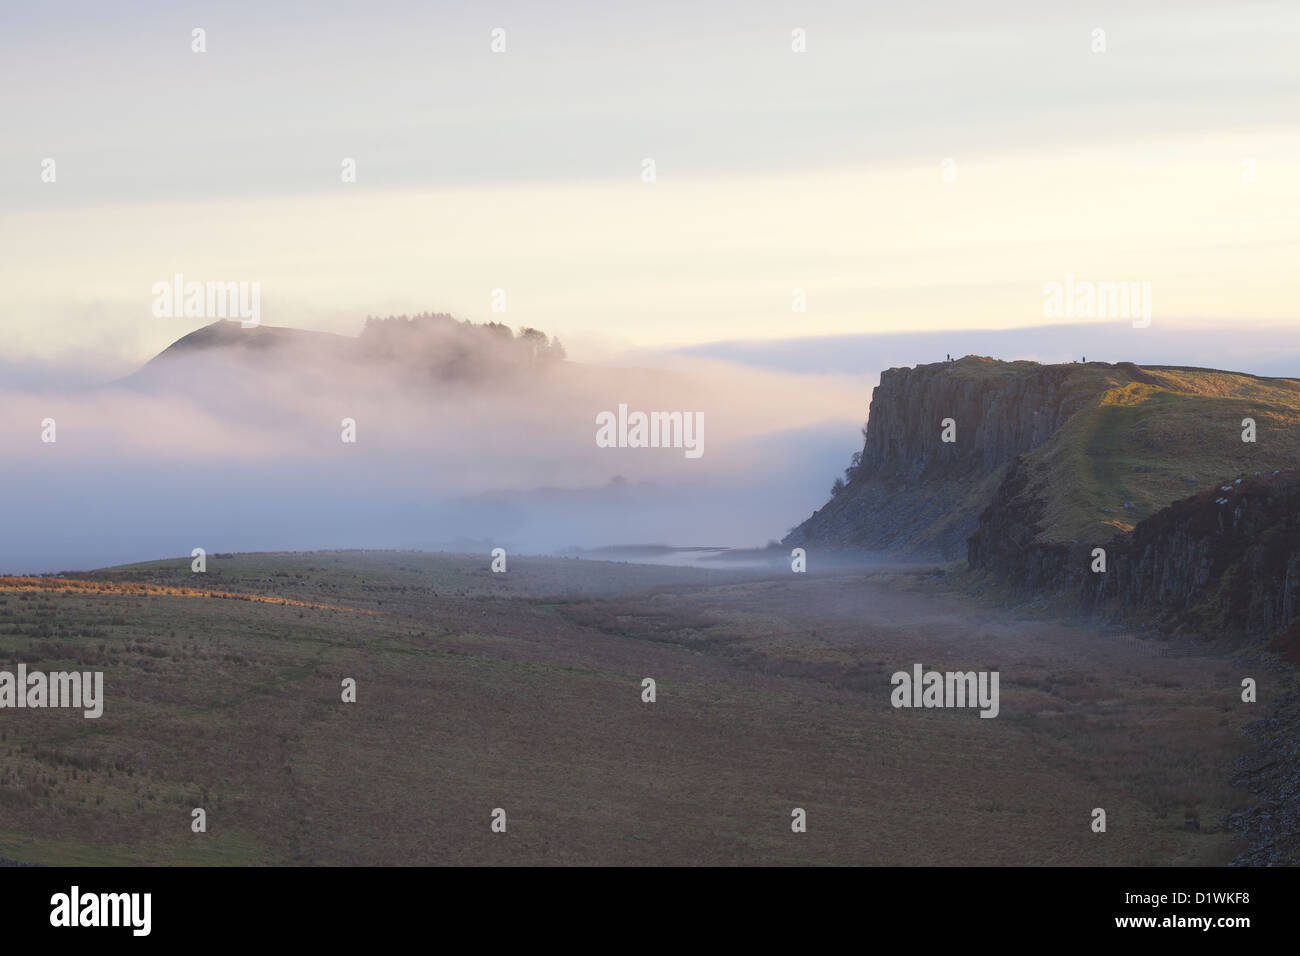 Banca a caldo e Highshield balze e roccioso del Lough nella nebbia da acciaio Rigg, il vallo di Adriano. Northumbria, (Northumberland), Inghilterra Foto Stock